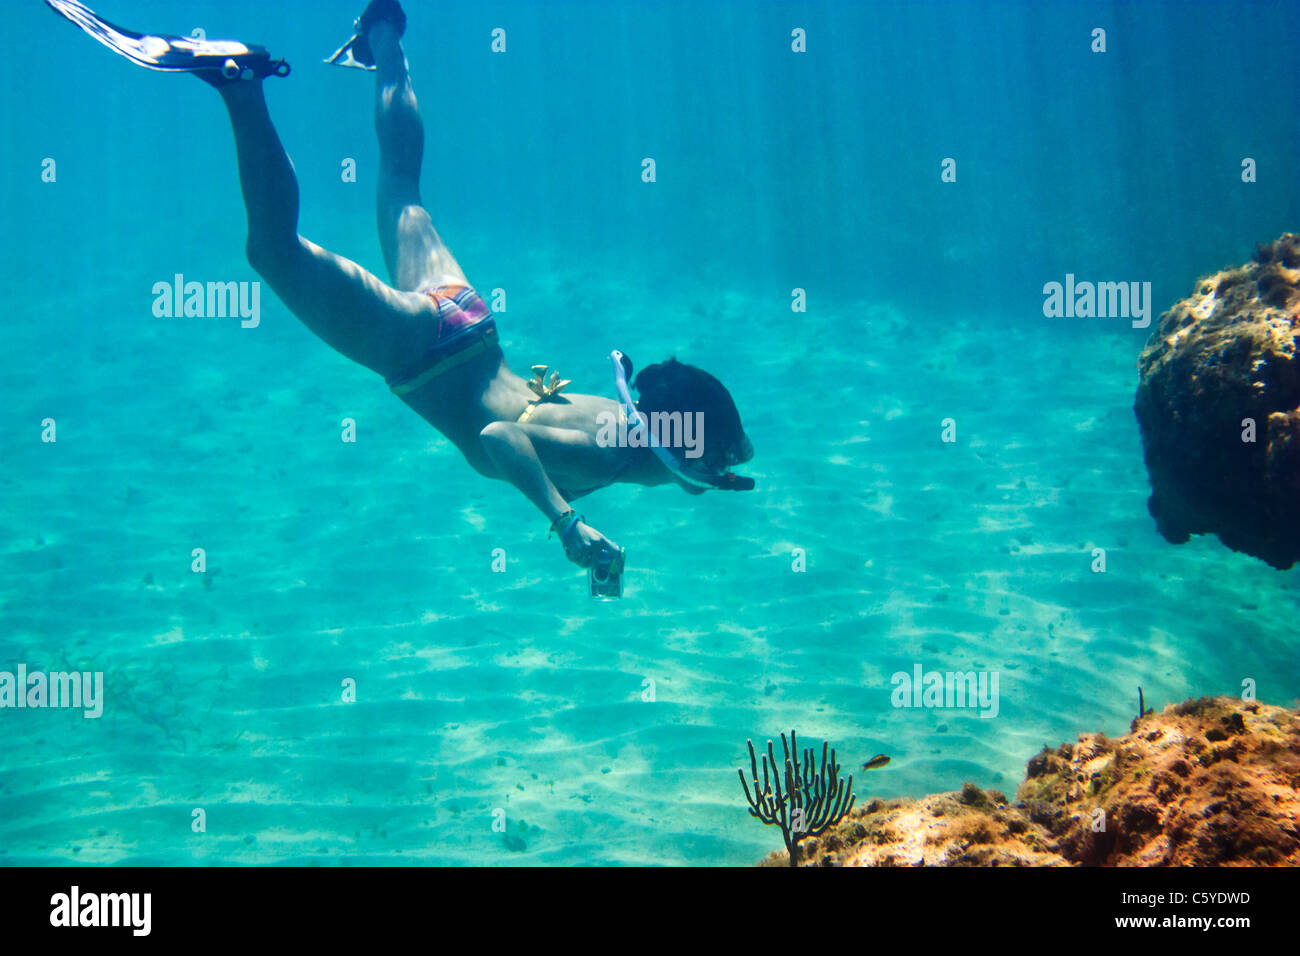 Donna in maschera snorkeling immersioni subacquee con fotocamera foto, cubana Coral reef Foto Stock